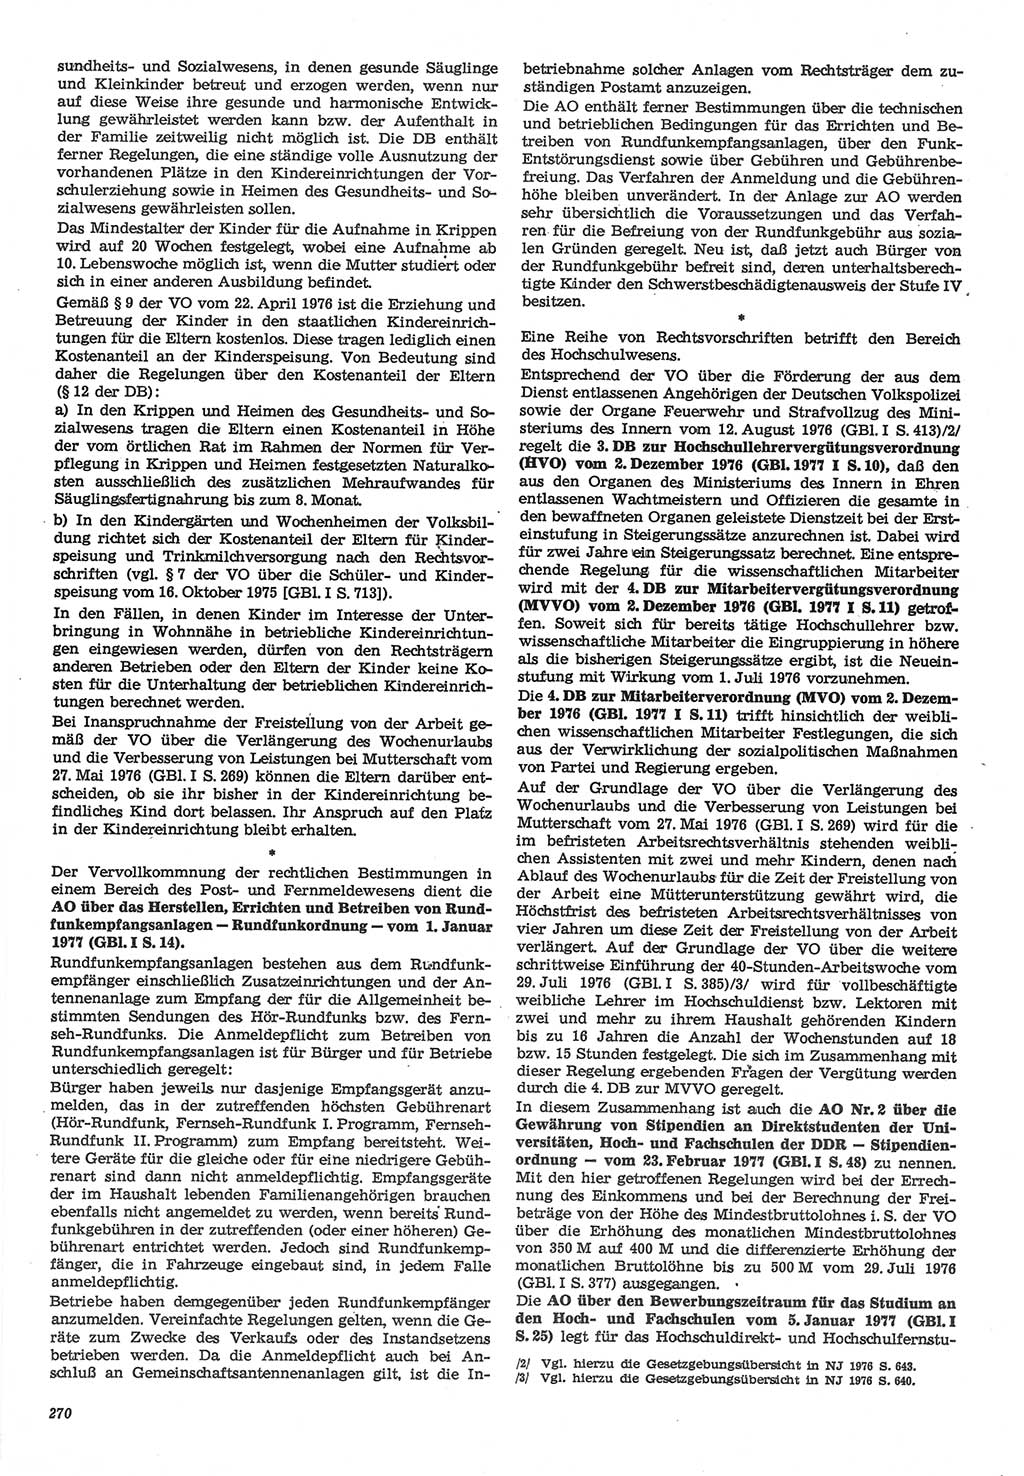 Neue Justiz (NJ), Zeitschrift für Recht und Rechtswissenschaft-Zeitschrift, sozialistisches Recht und Gesetzlichkeit, 31. Jahrgang 1977, Seite 270 (NJ DDR 1977, S. 270)